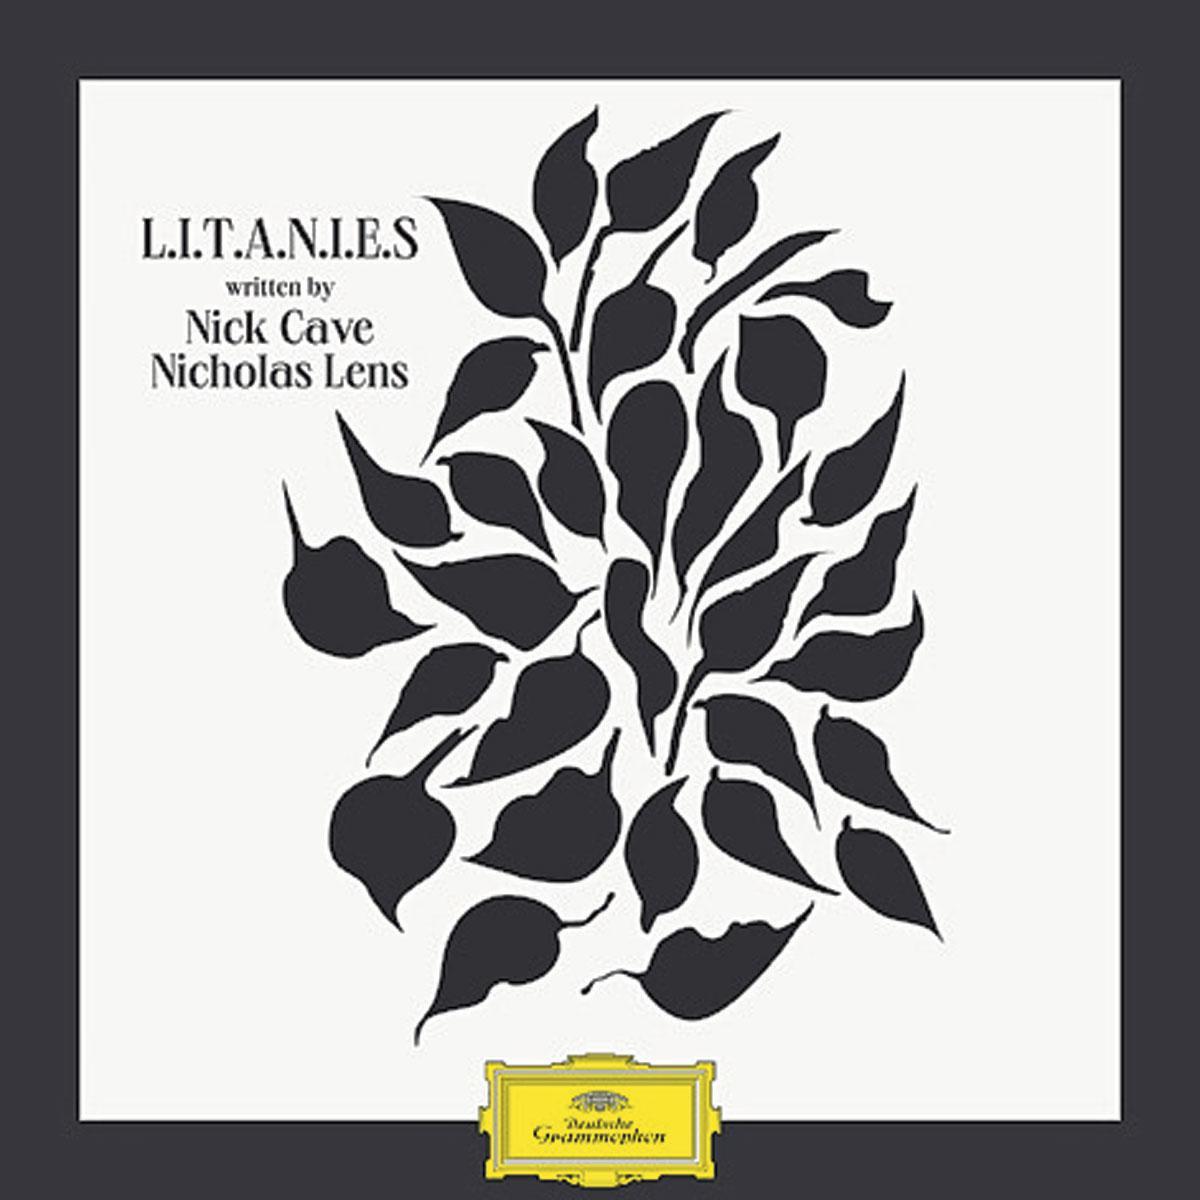 L.I.T.A.N.I.E.S van Nicholas Lens en Nick Cave verschijnt op 4 december bij Deutsche Grammophon.